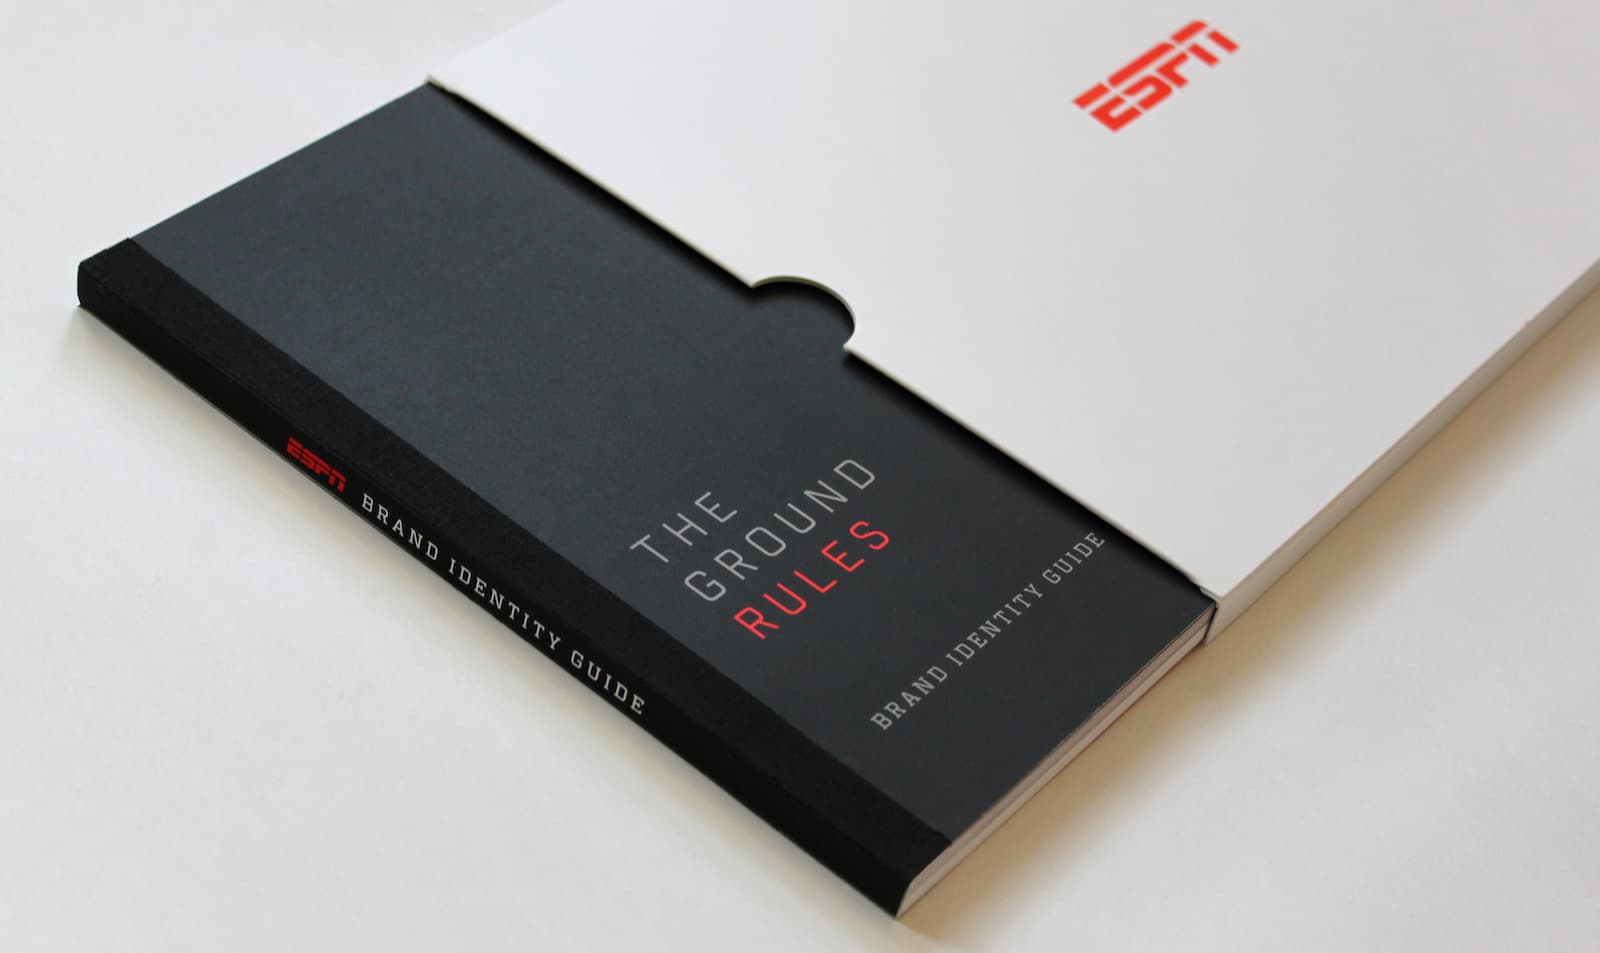 Брендбук компании ESPN в виде книги, описывает миссию и цели компании, манеру общения с аудиторией